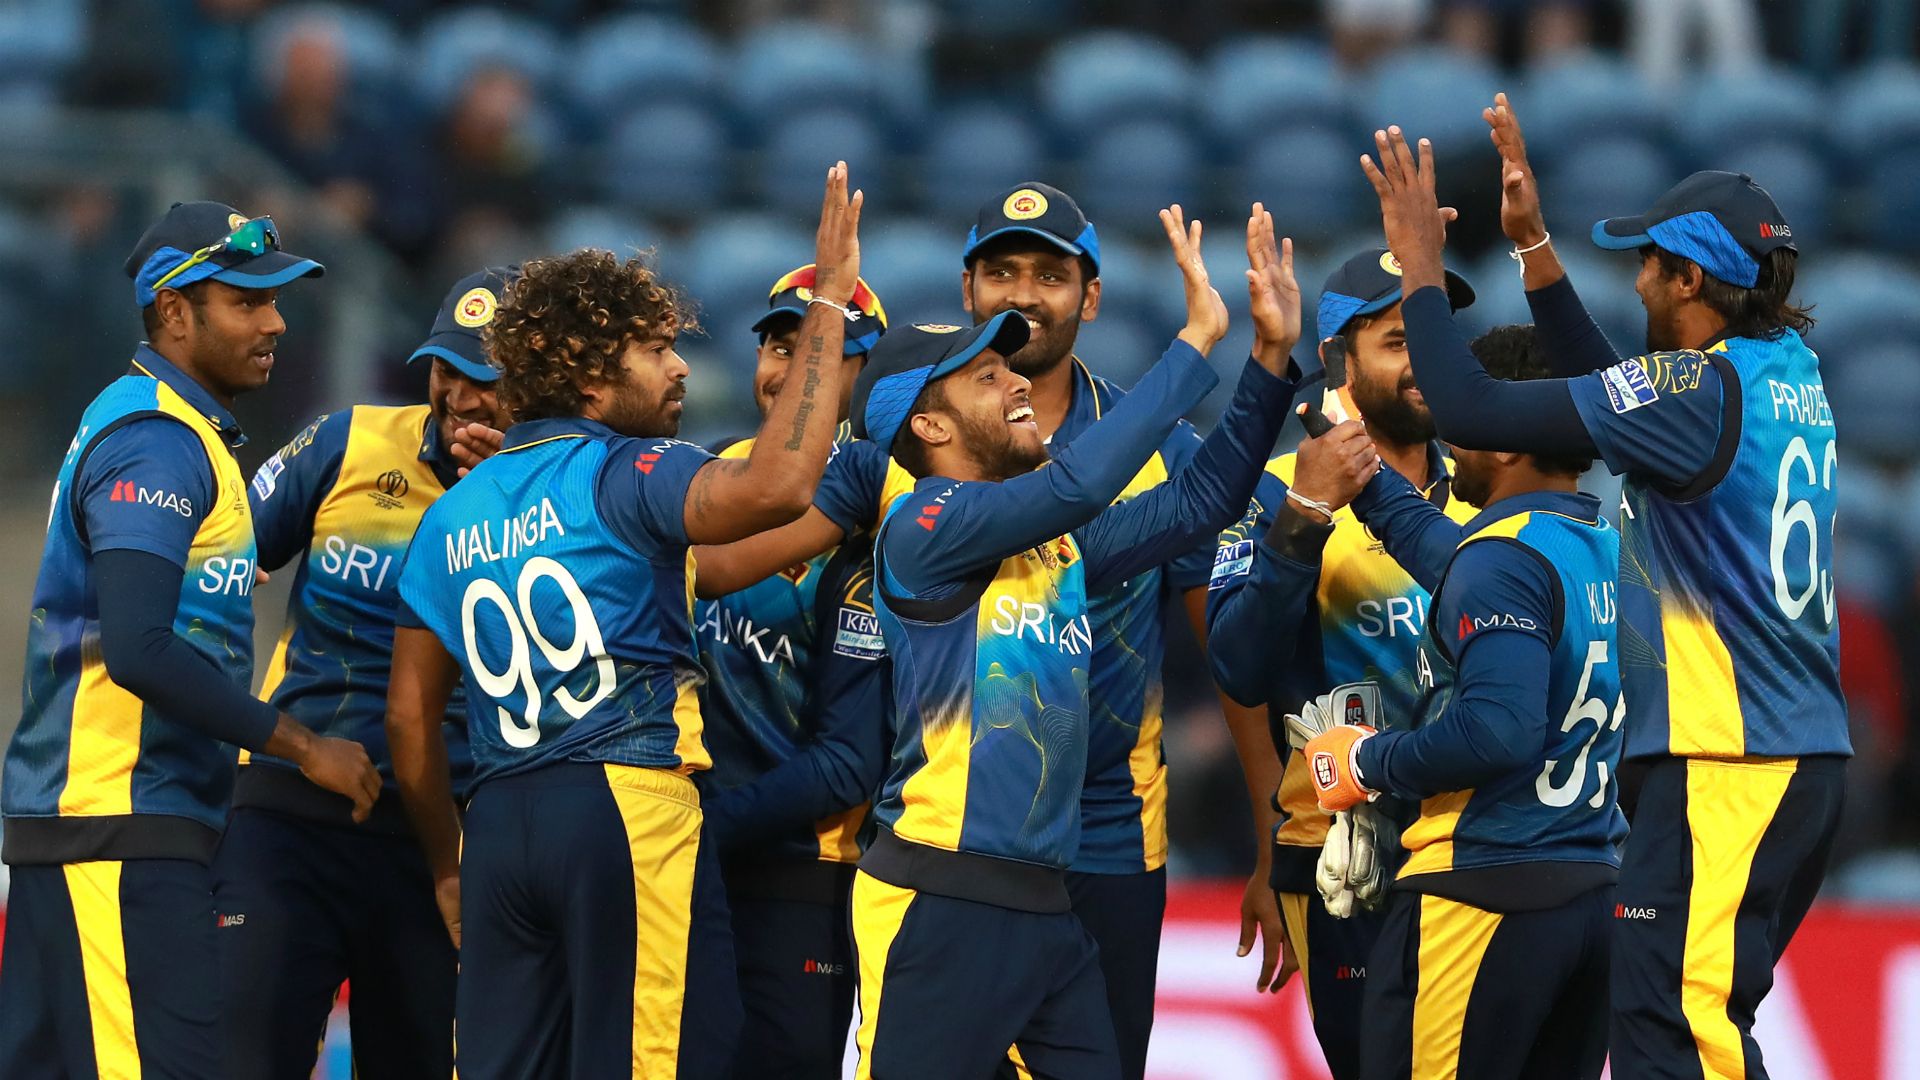 Karunaratne relieved by scrappy Sri Lanka win